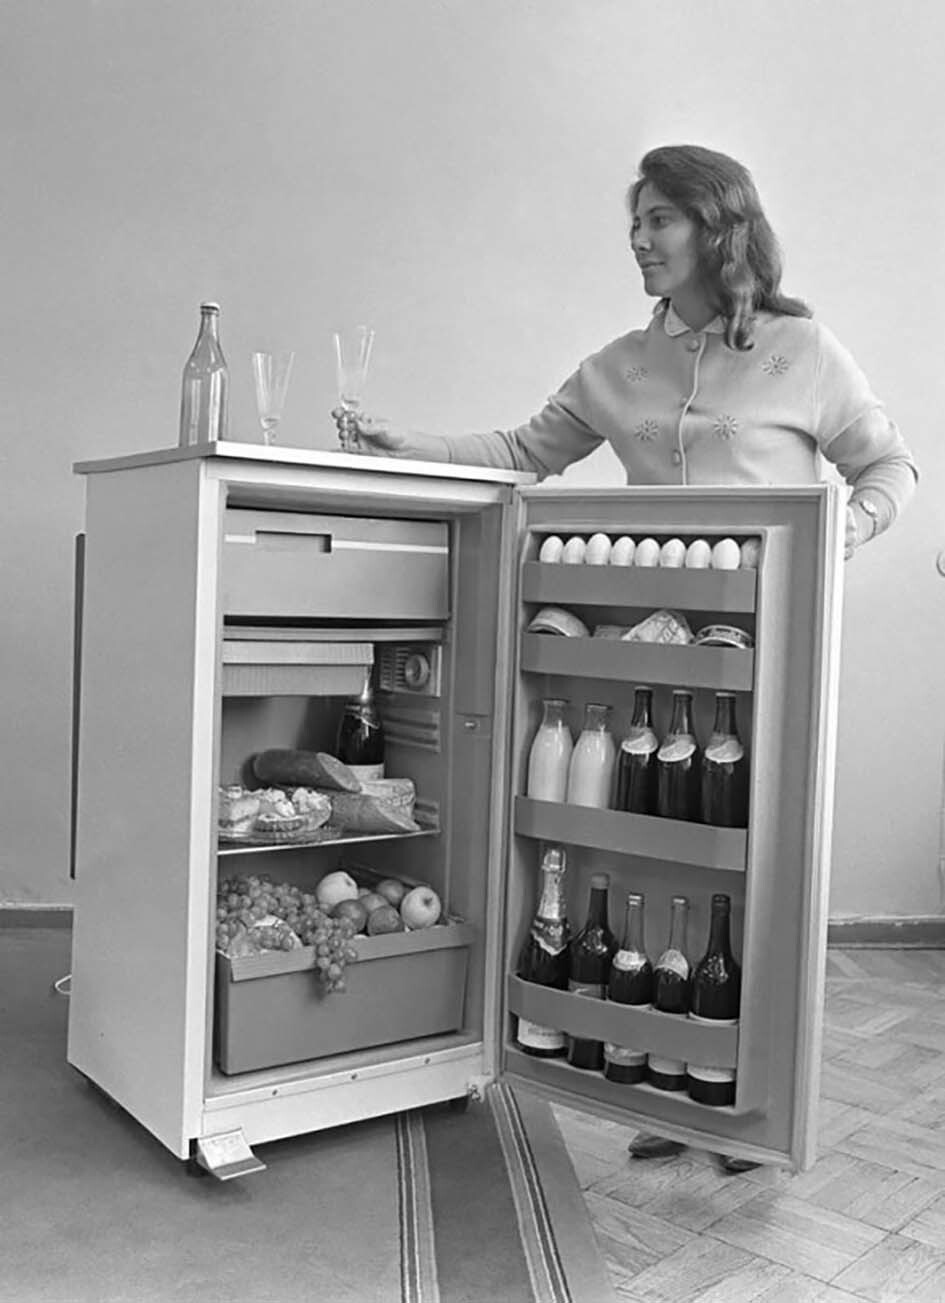 Рекламное фотография холодильника Кишиневского завода, 1970 год